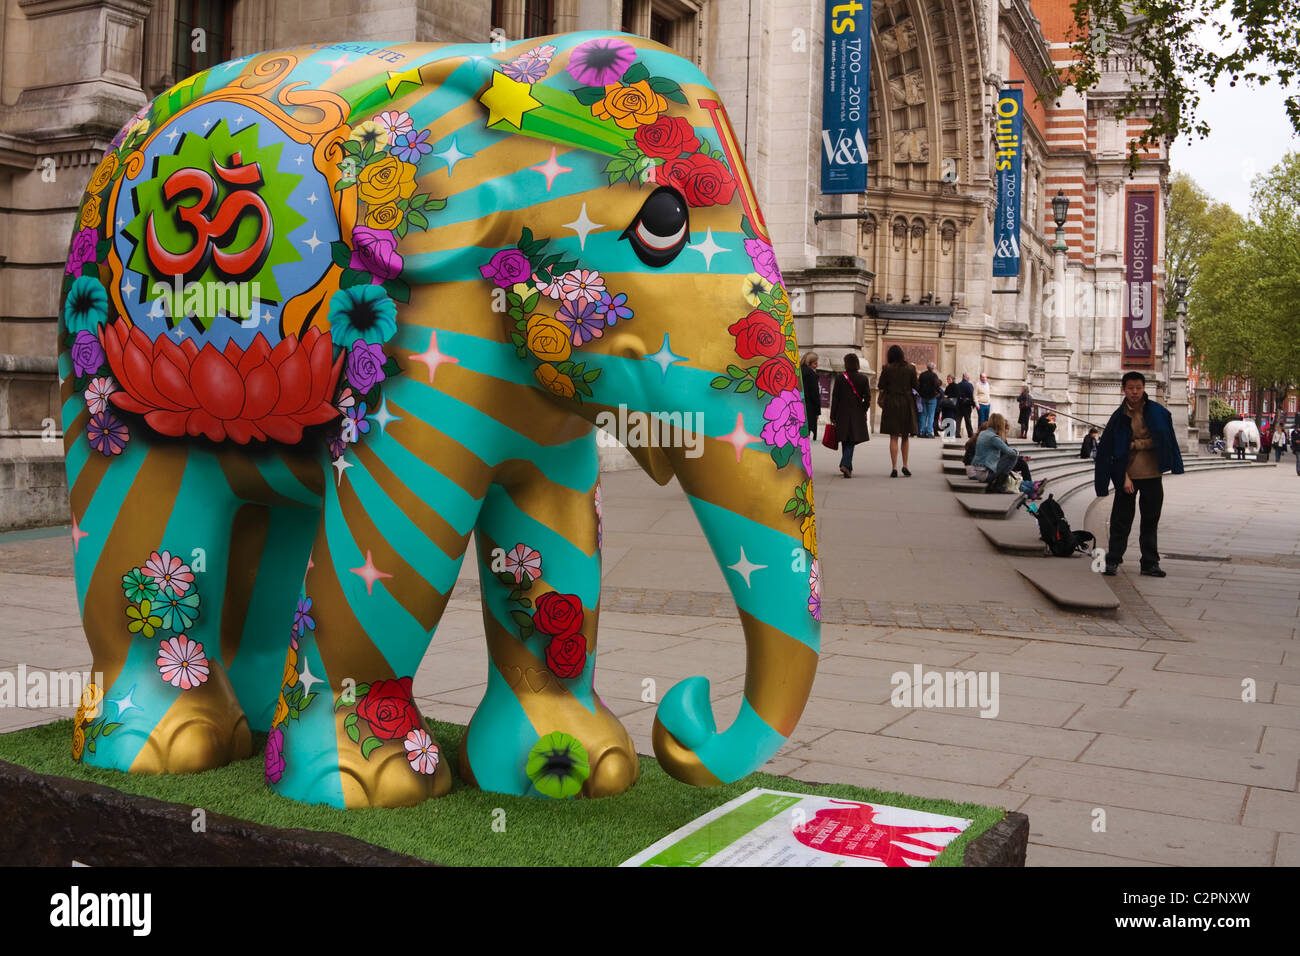 Un éléphant peint de couleurs vives, de la charité de la famille d'éléphants pour sauver les éléphants d'Asie, se trouve à l'extérieur du musée V&A, Londres, 2010 Banque D'Images